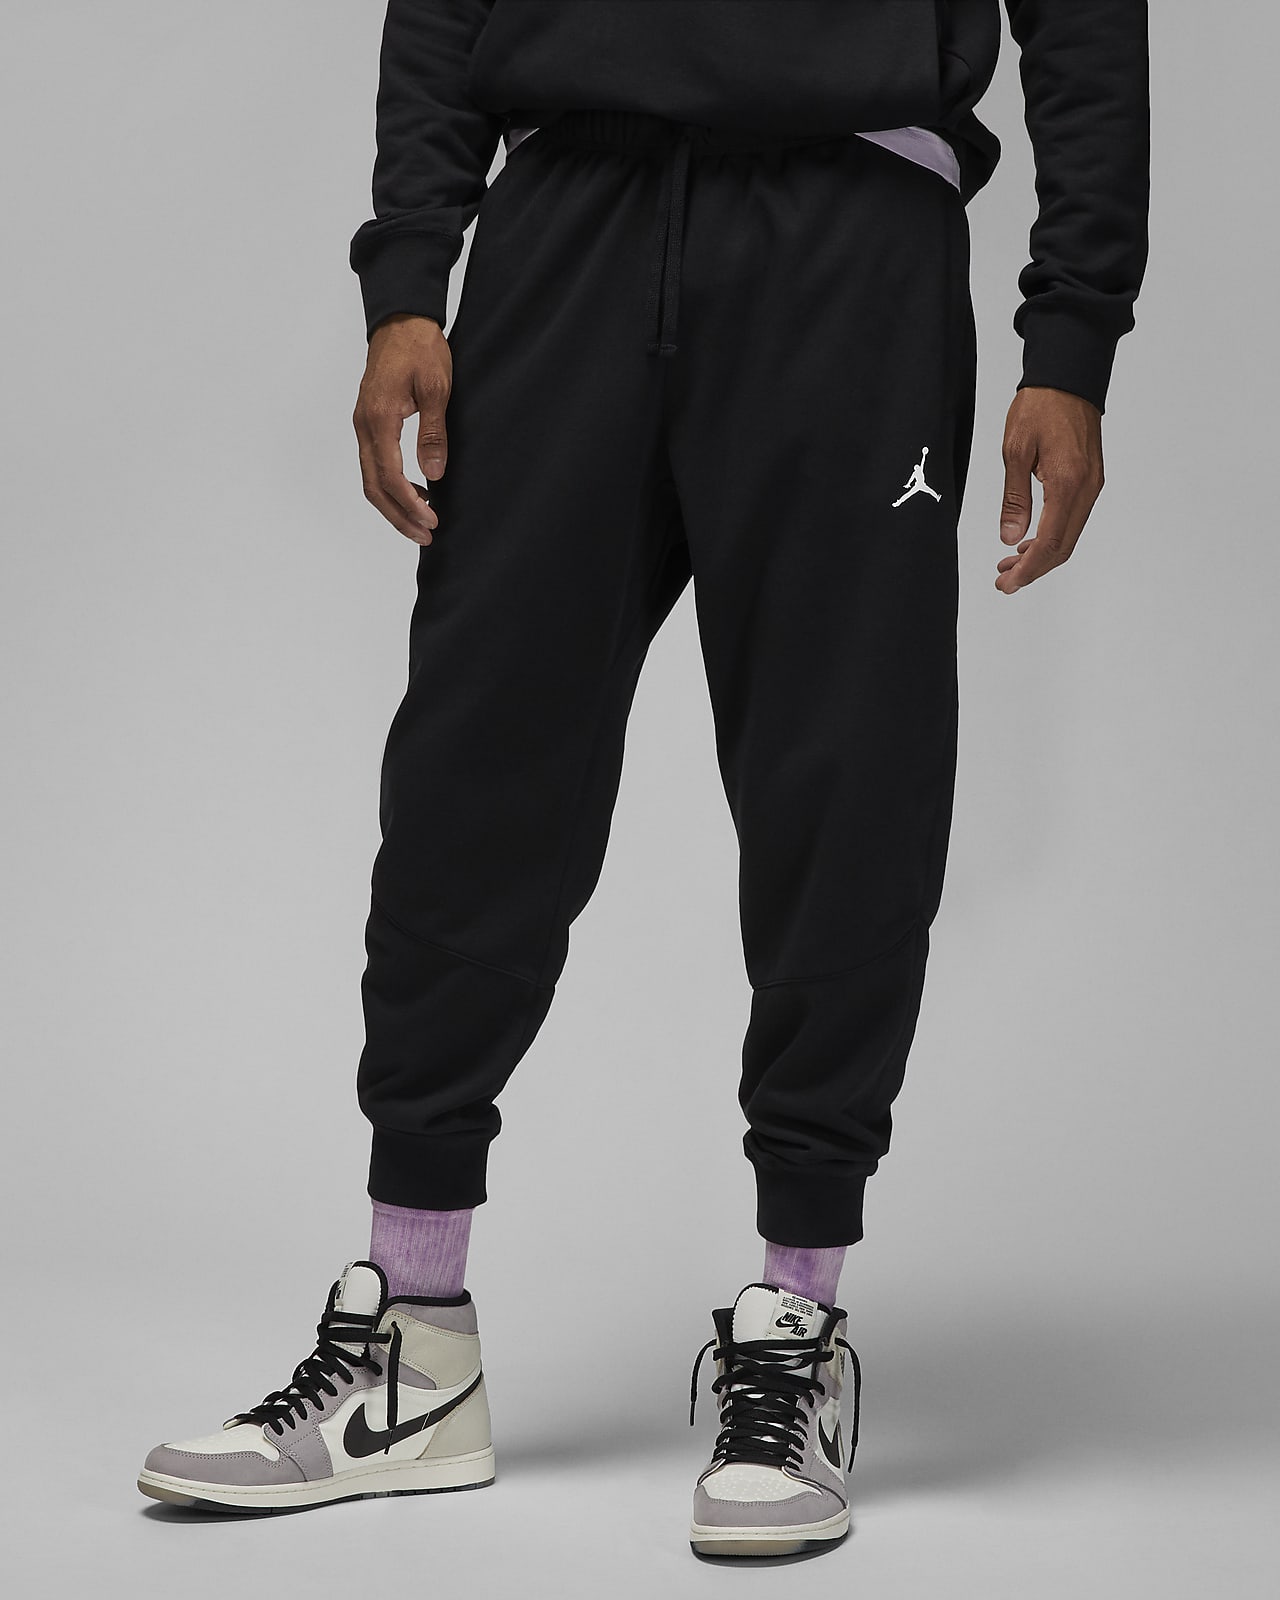 curso límite Proporcional Pants de tejido Fleece para hombre Jordan Dri-FIT Sport. Nike.com